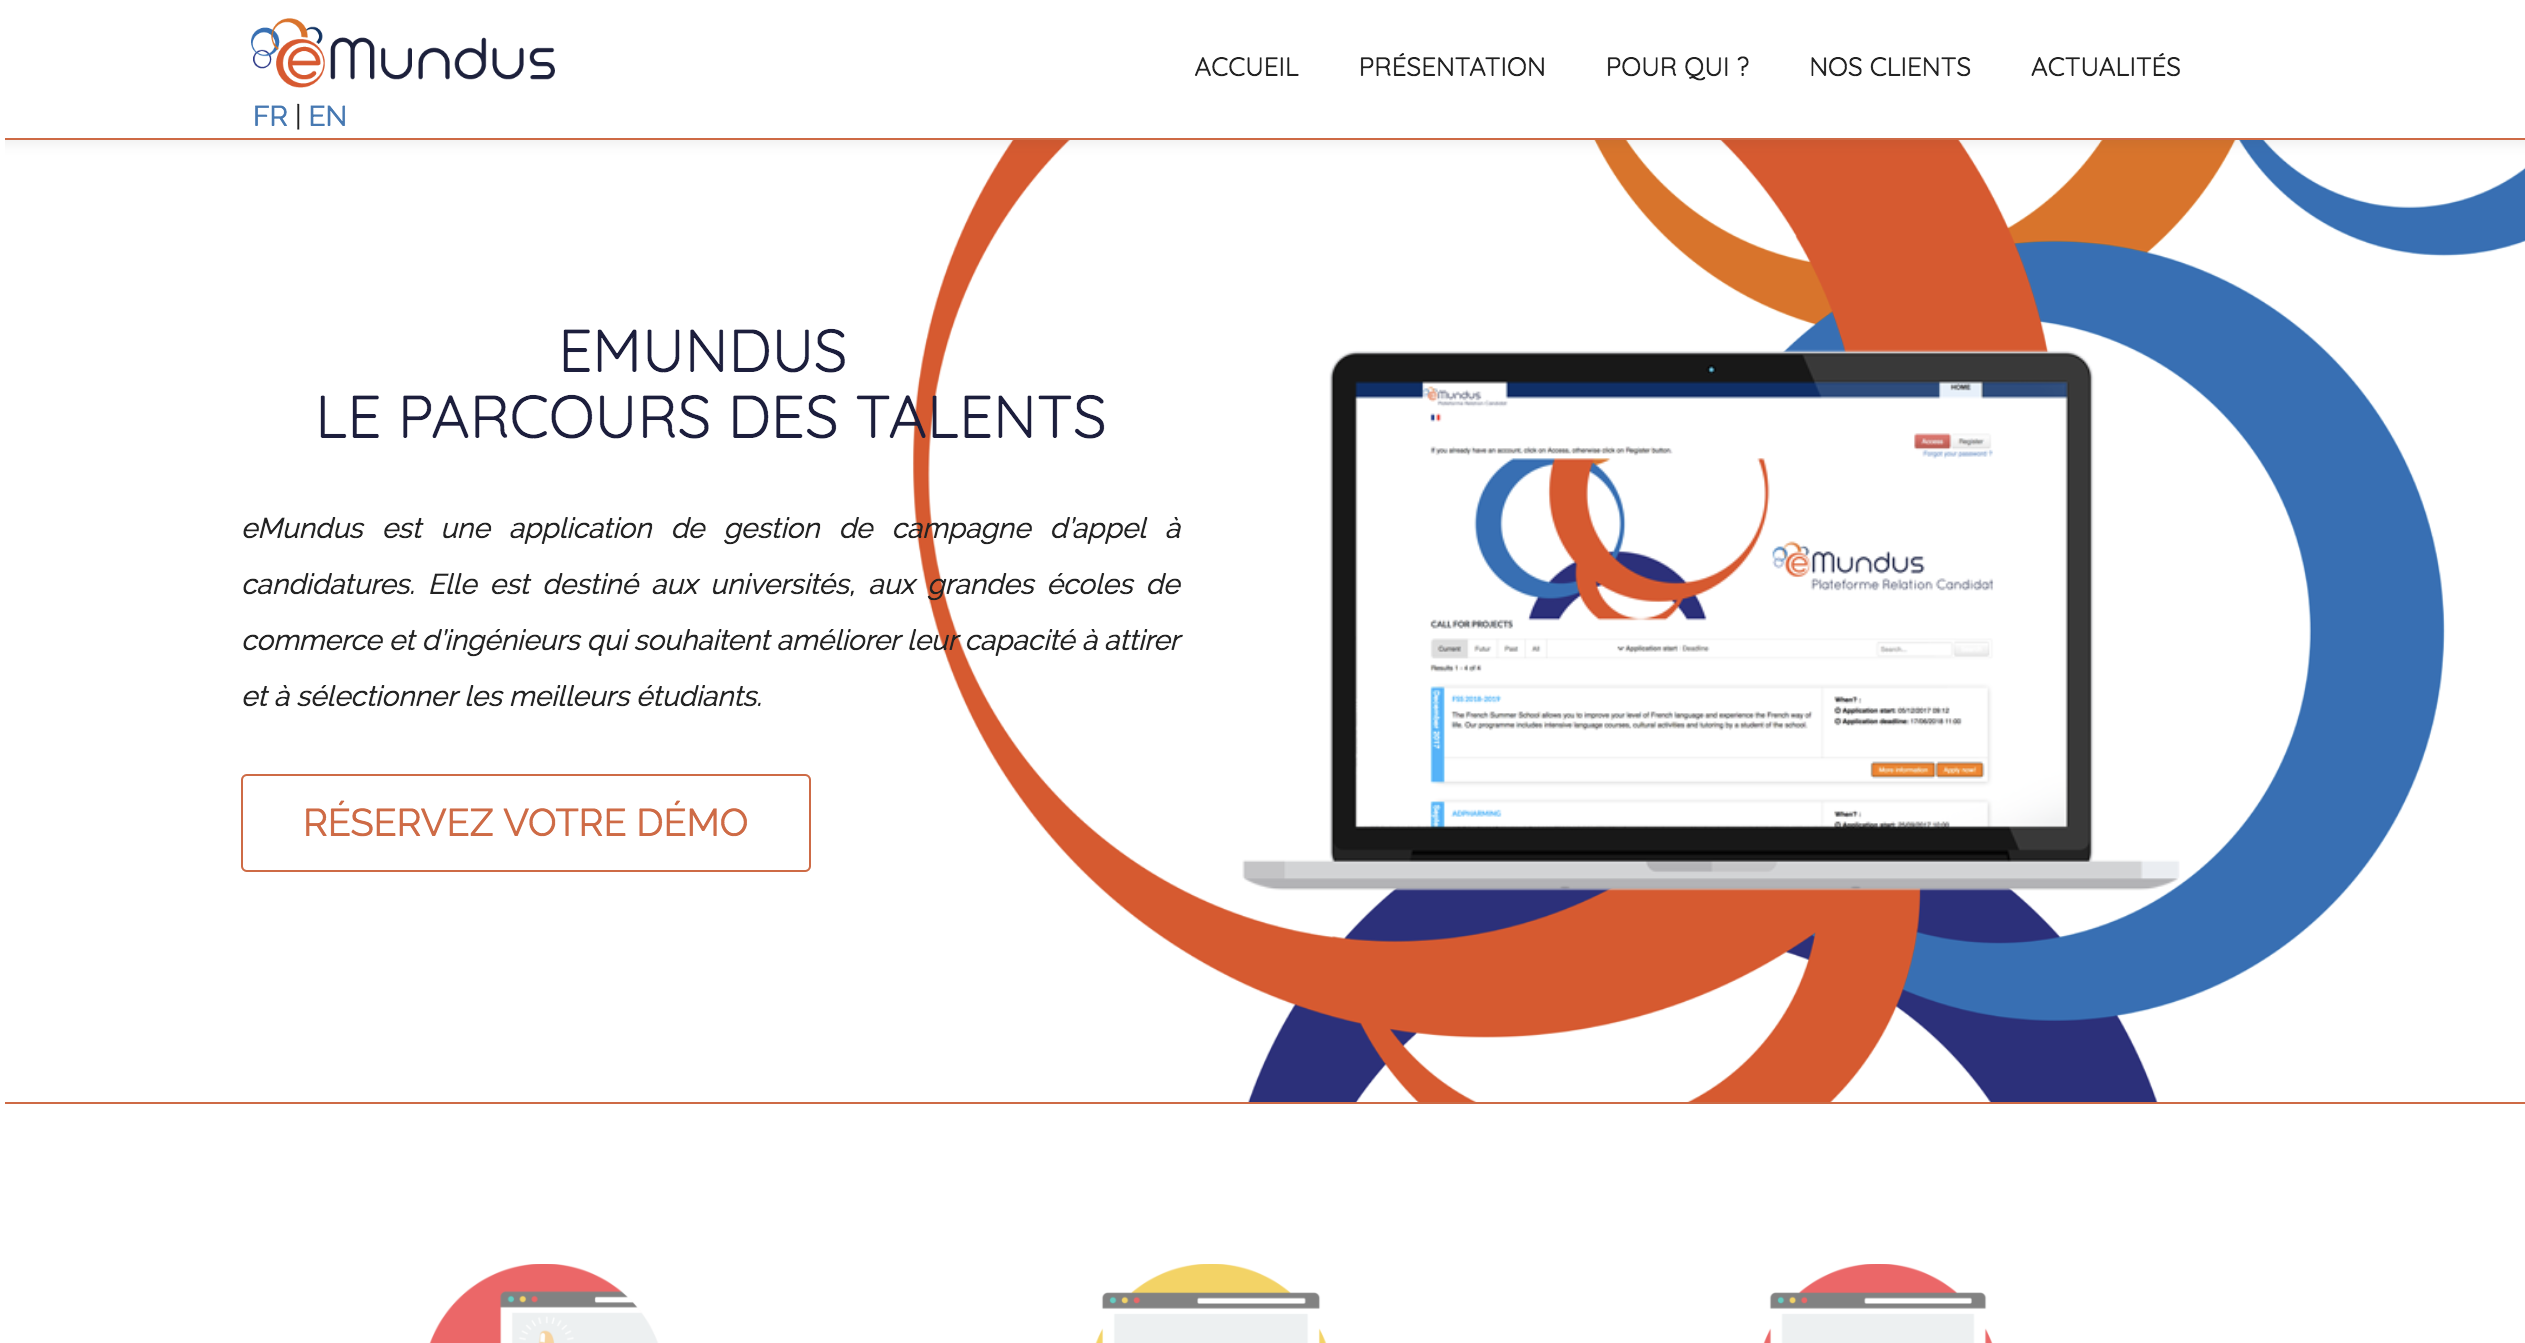 Review eMundus: Online candidacy management plateform - Appvizer